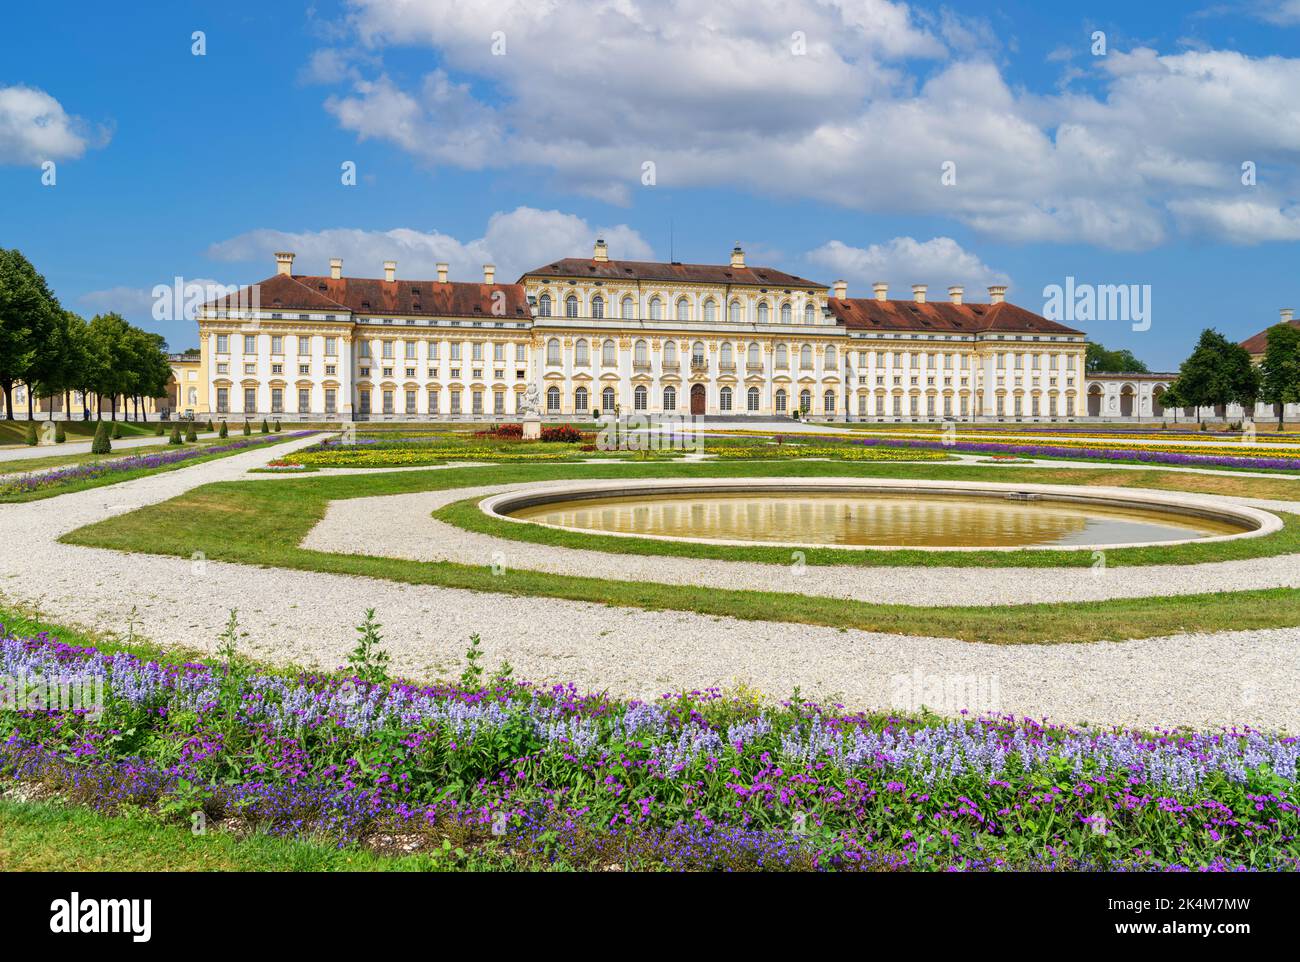 Neues Schloss Schleißheim, complejo palacio Schleissheim, Múnich, Baviera, Alemania Foto de stock